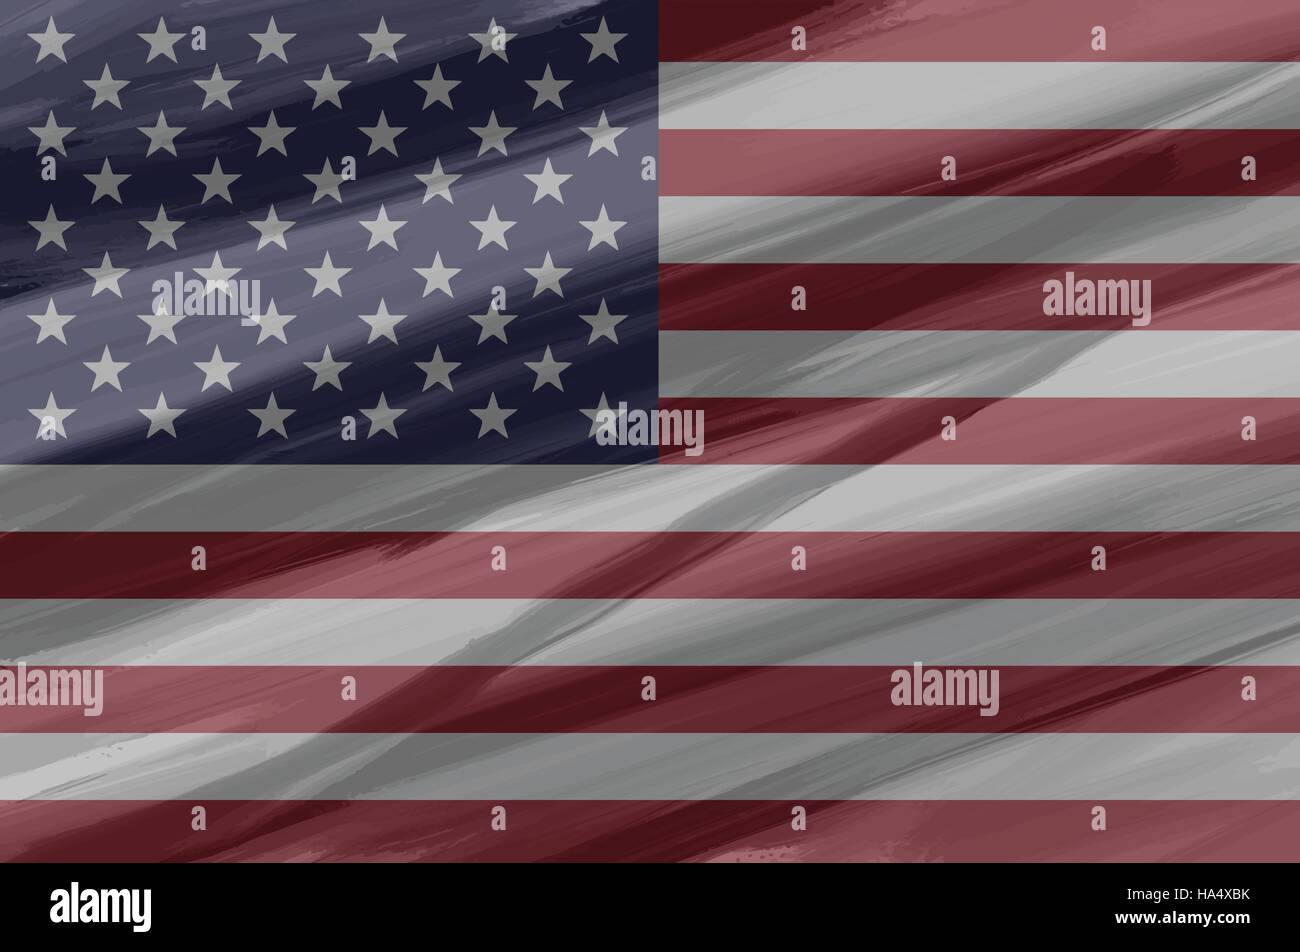 USA / Vereinigte Staaten von Amerika bemalt / gezeichnete Vektor Flagge. Dramatische, ungewöhnliche Optik. Vektor-Datei enthält Flagge und Textur-Layer Stock Vektor